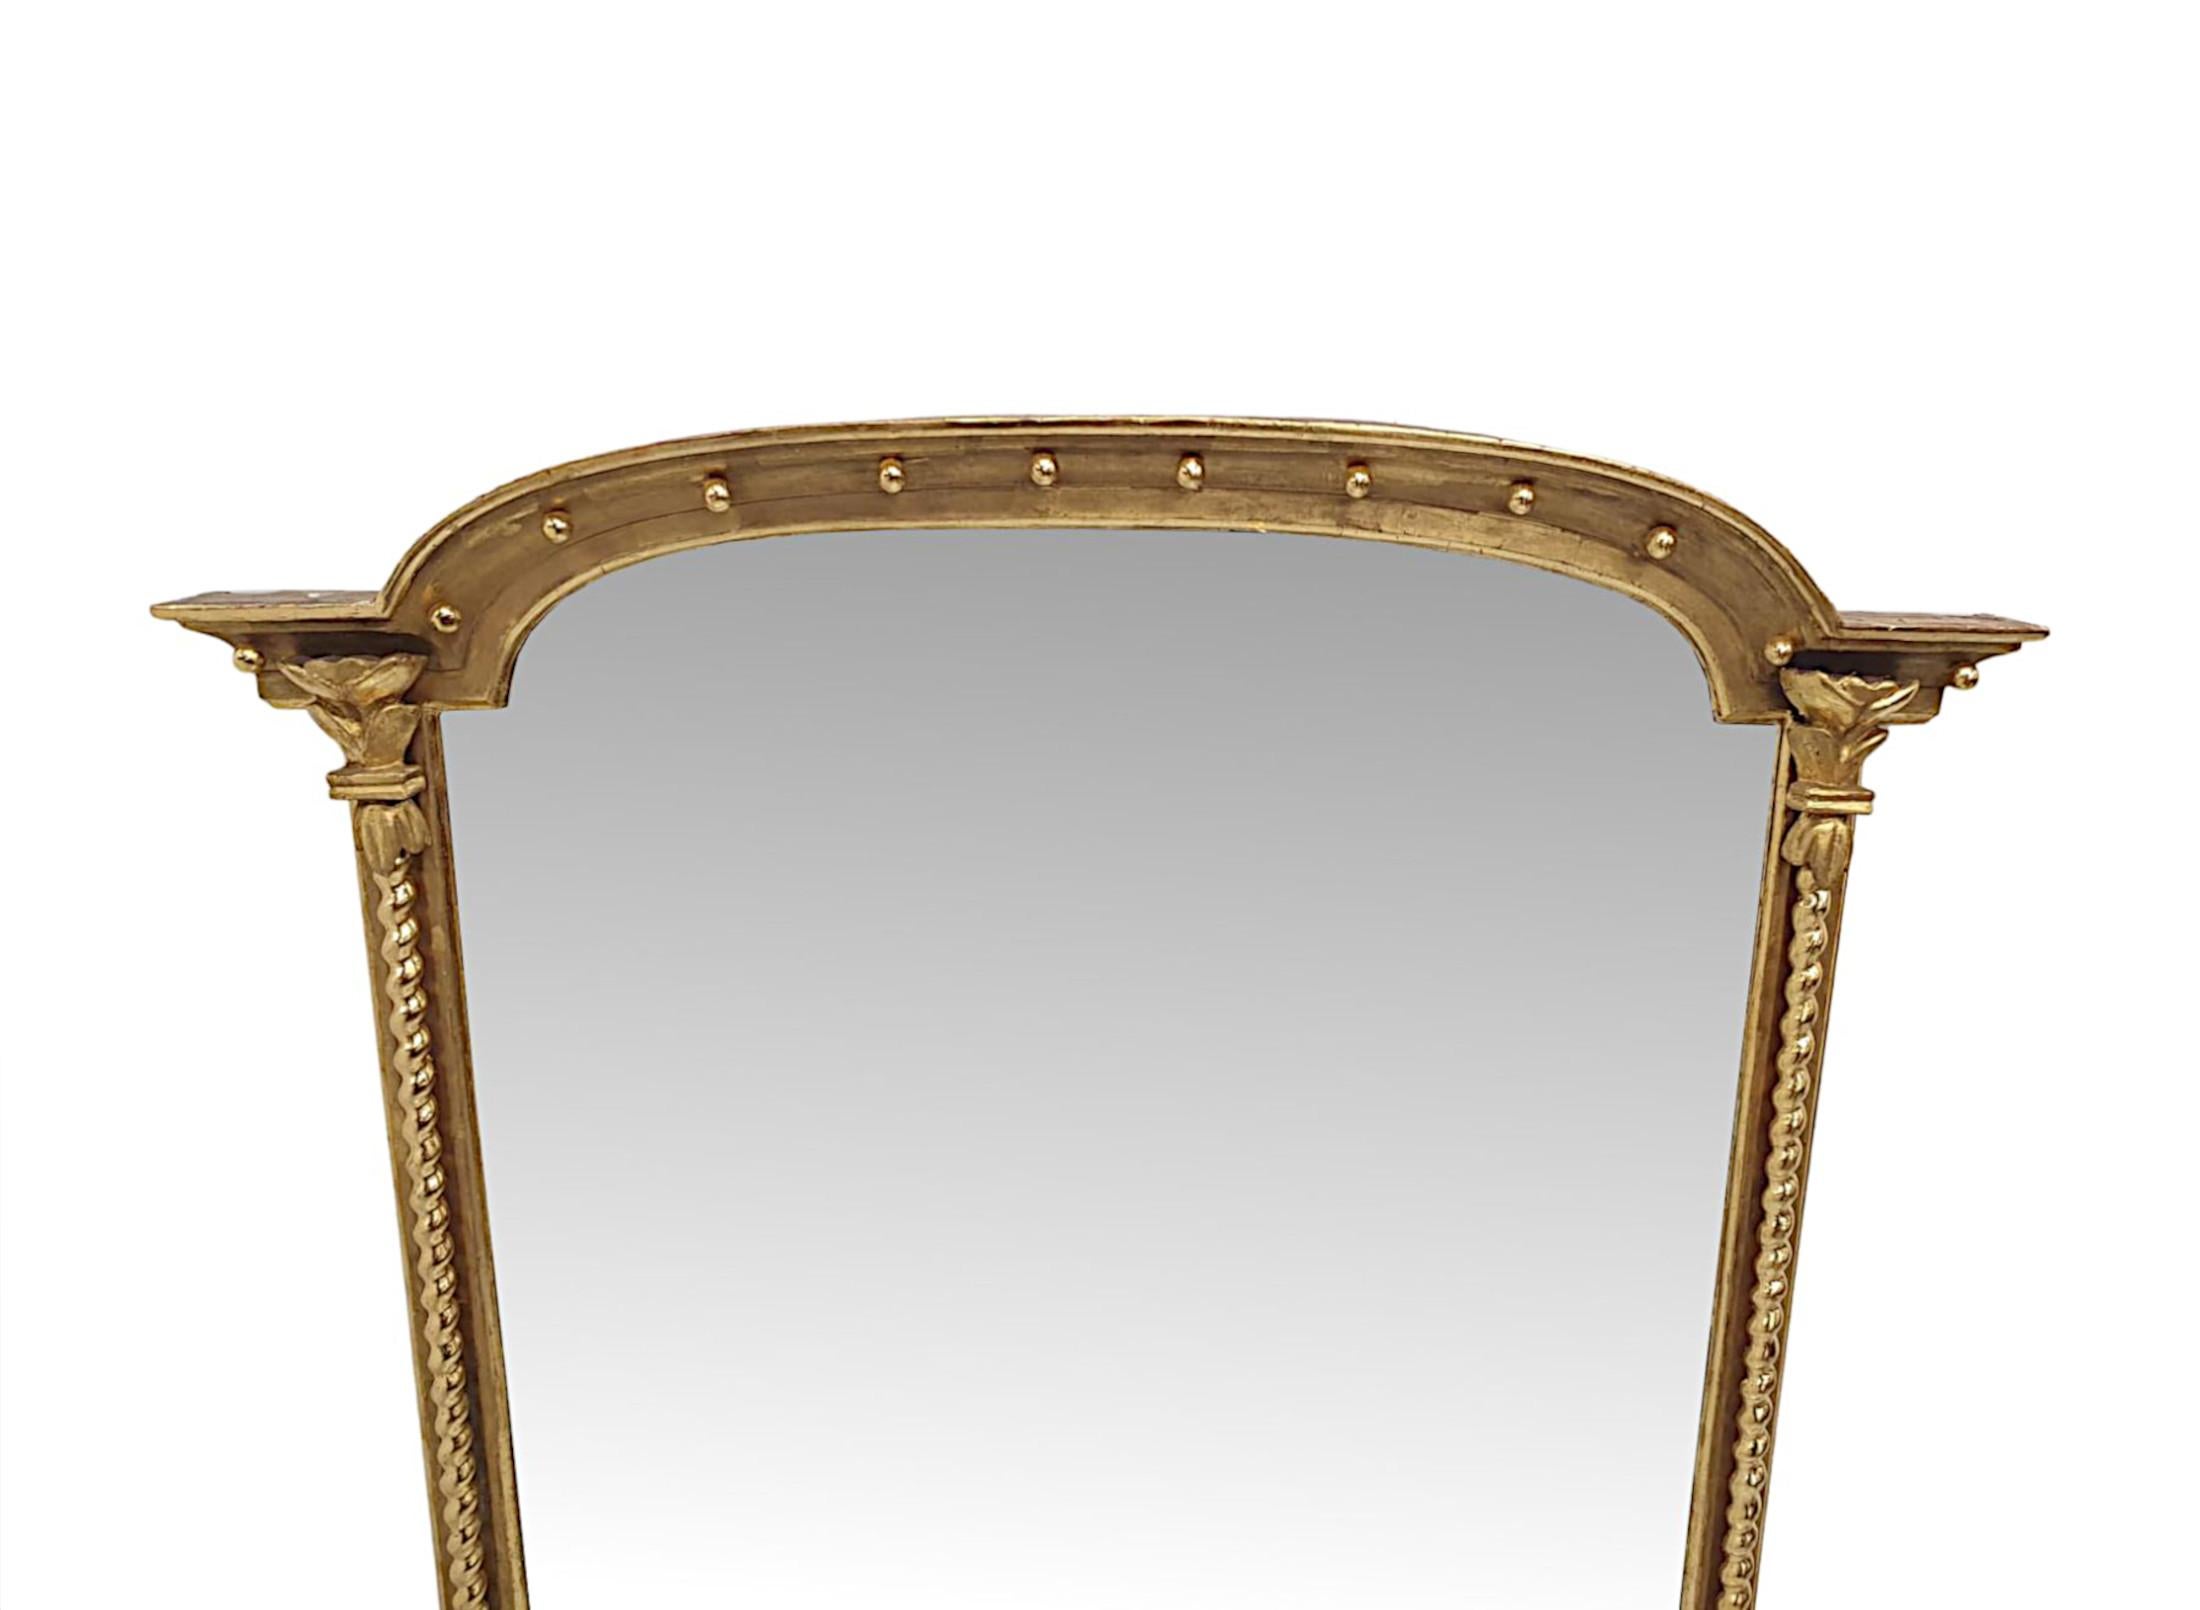 Eine atemberaubende 19. Jahrhundert Vergoldung overmantle Spiegel von fabelhafter Qualität.  Die rechteckige Spiegelglasplatte befindet sich in einem fein geschnitzten Rahmen aus vergoldetem Holz, der mit einem kannelierten und geschwungenen,